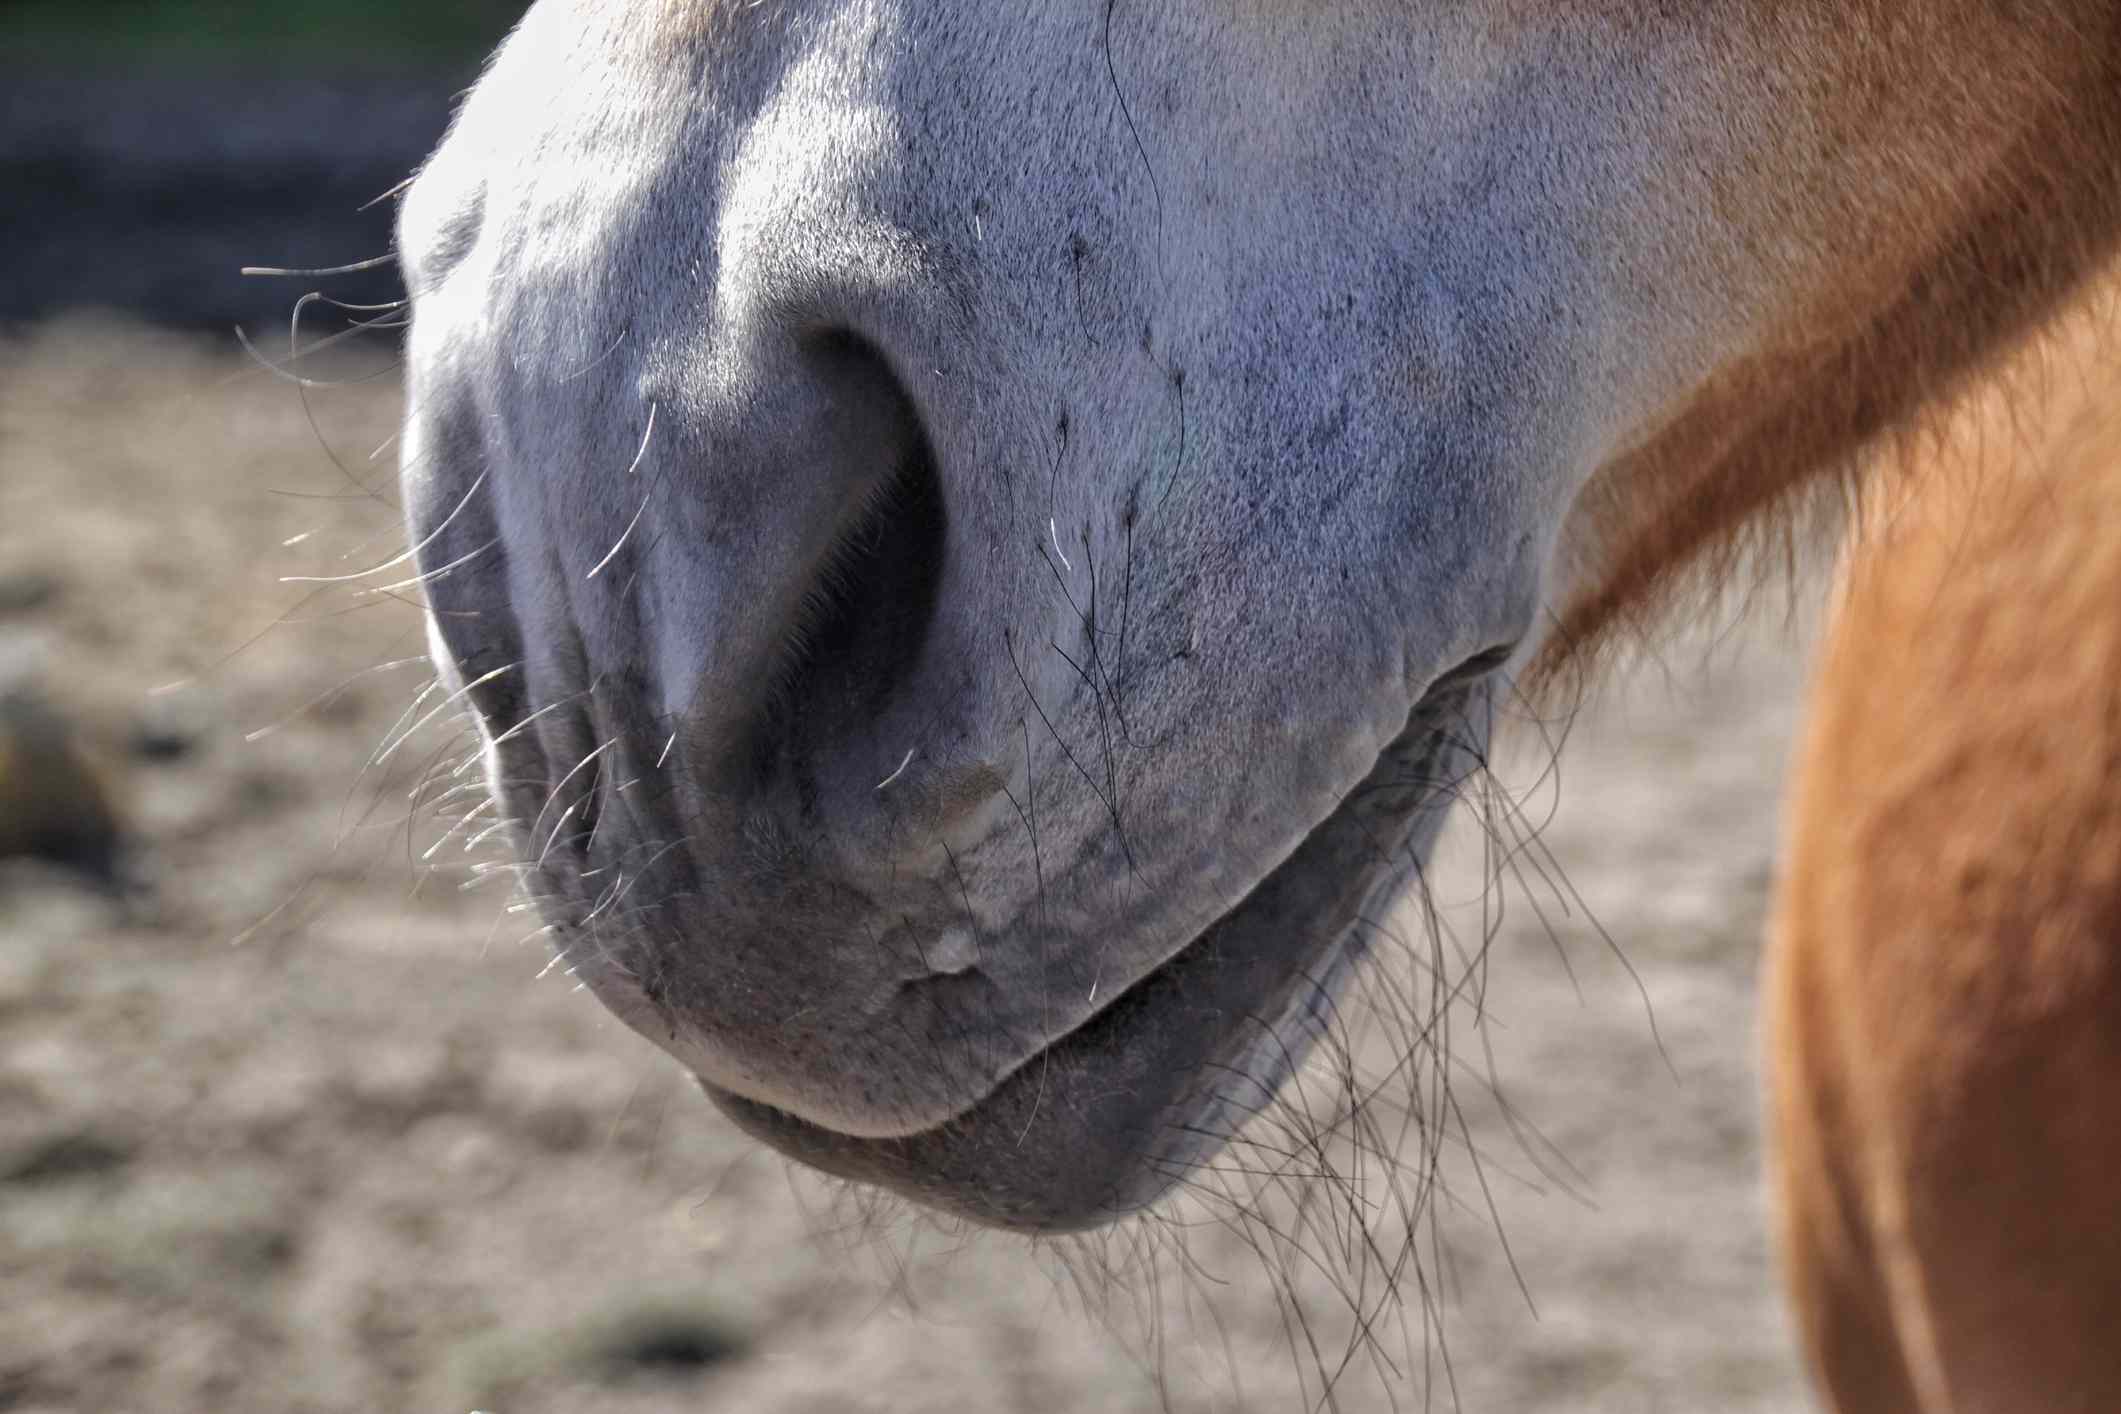 A horse's muzzle